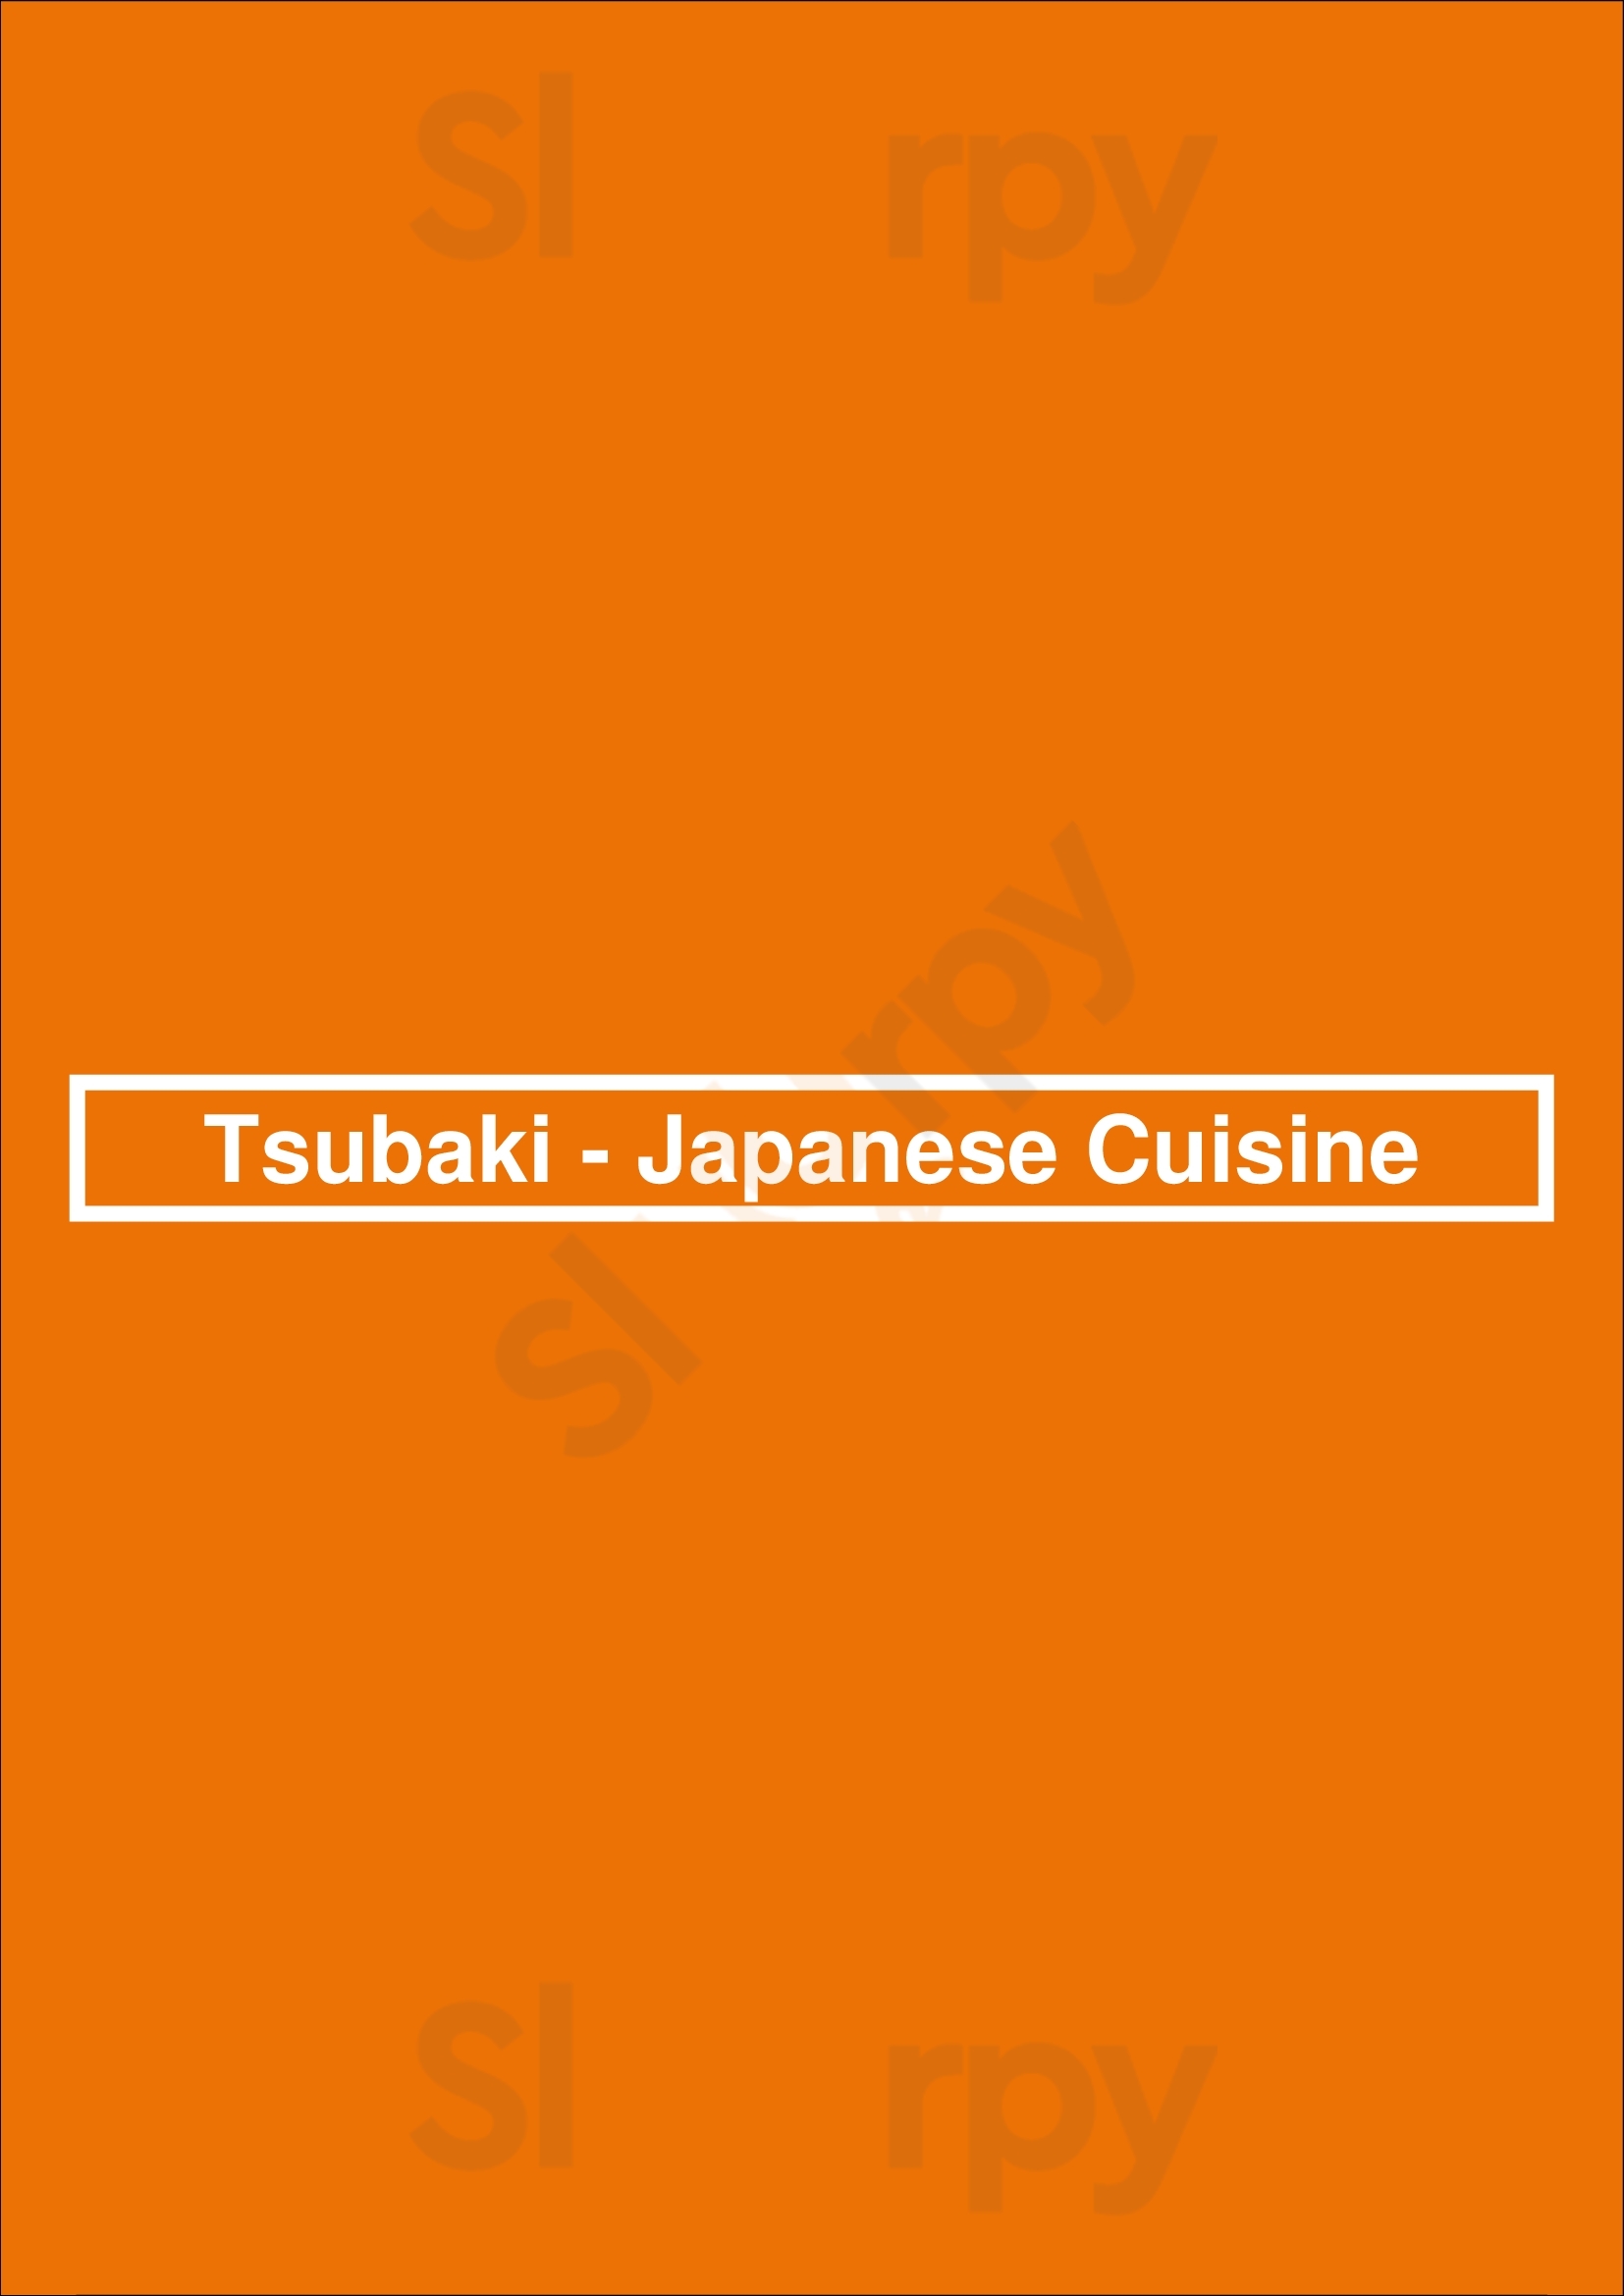 Tsubaki - Japanese Cuisine Lisboa Menu - 1